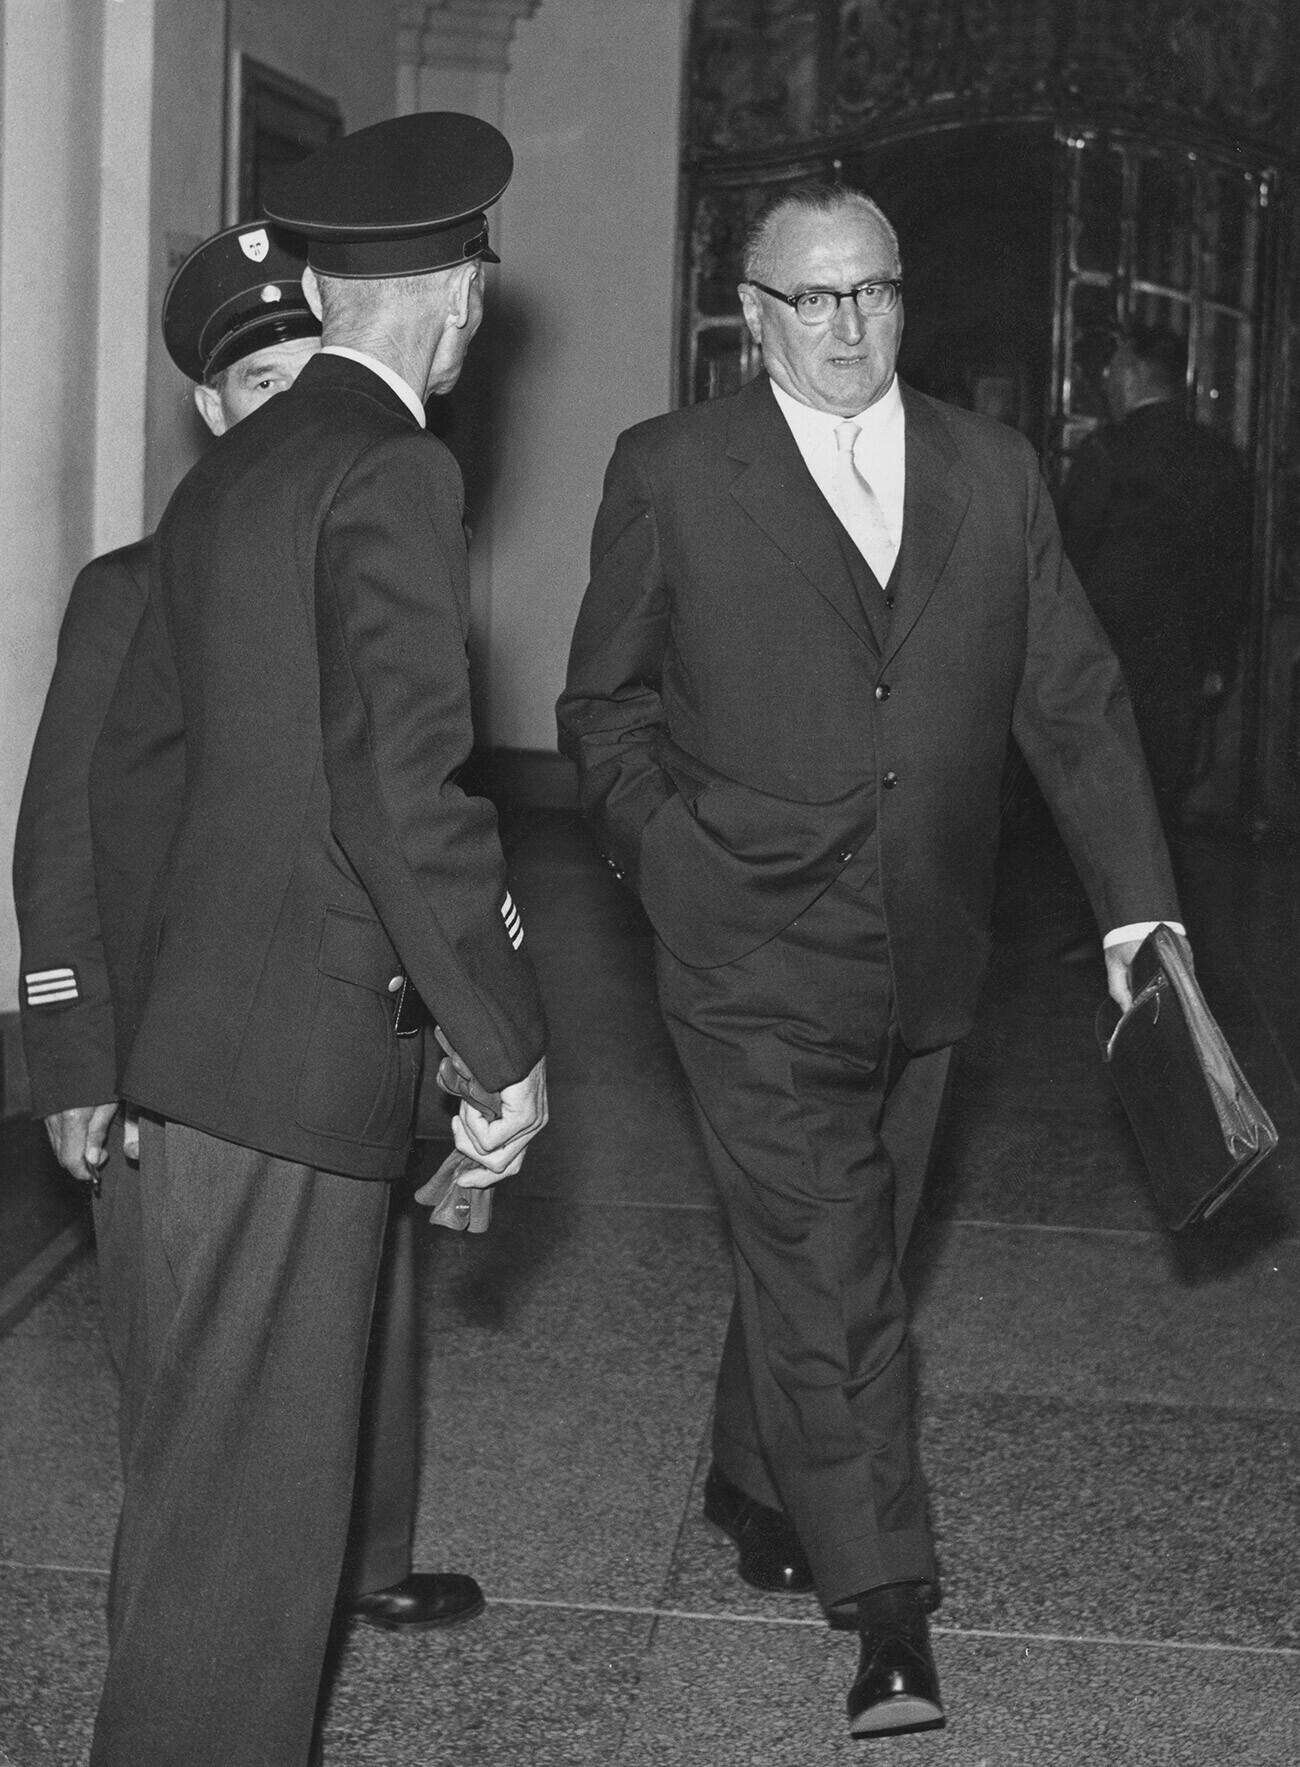 Marsekal Lapangan Jerman Ferdinand Schörner memasuki ruang sidang selama persidangannya di Jerman pada 4 Oktober 1957.